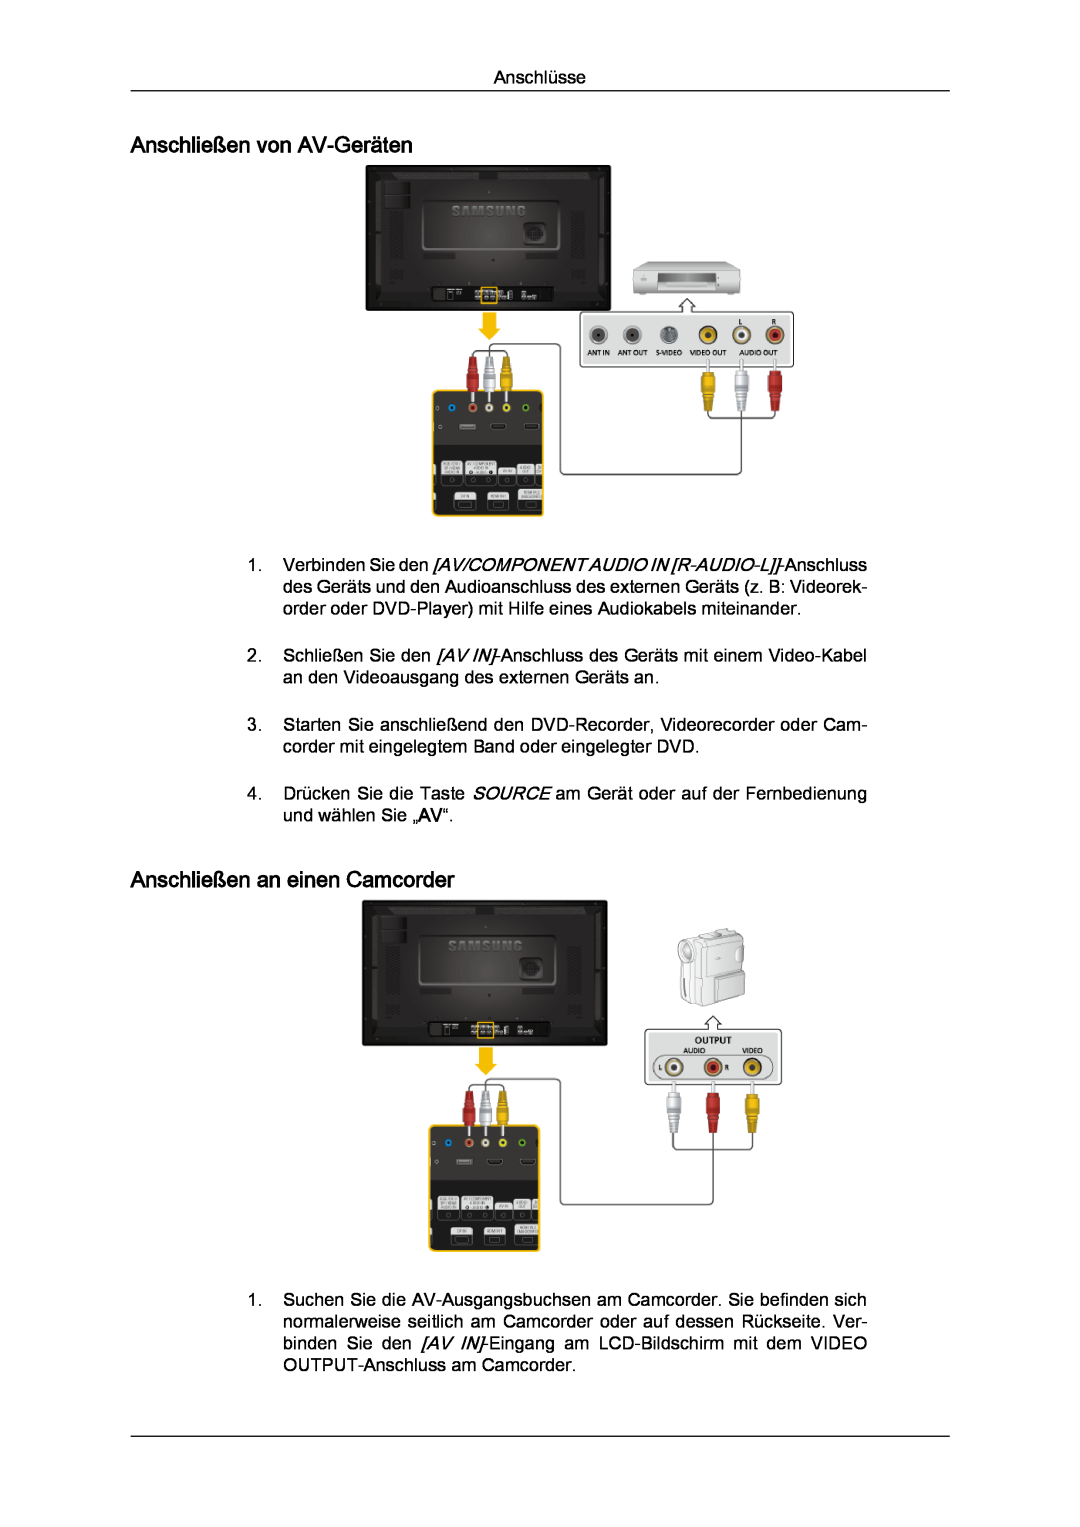 Samsung LH32CRSMBC/EN, LH32CRTMBC/EN, LH32CRSMBD/EN manual Anschließen von AV-Geräten, Anschließen an einen Camcorder 